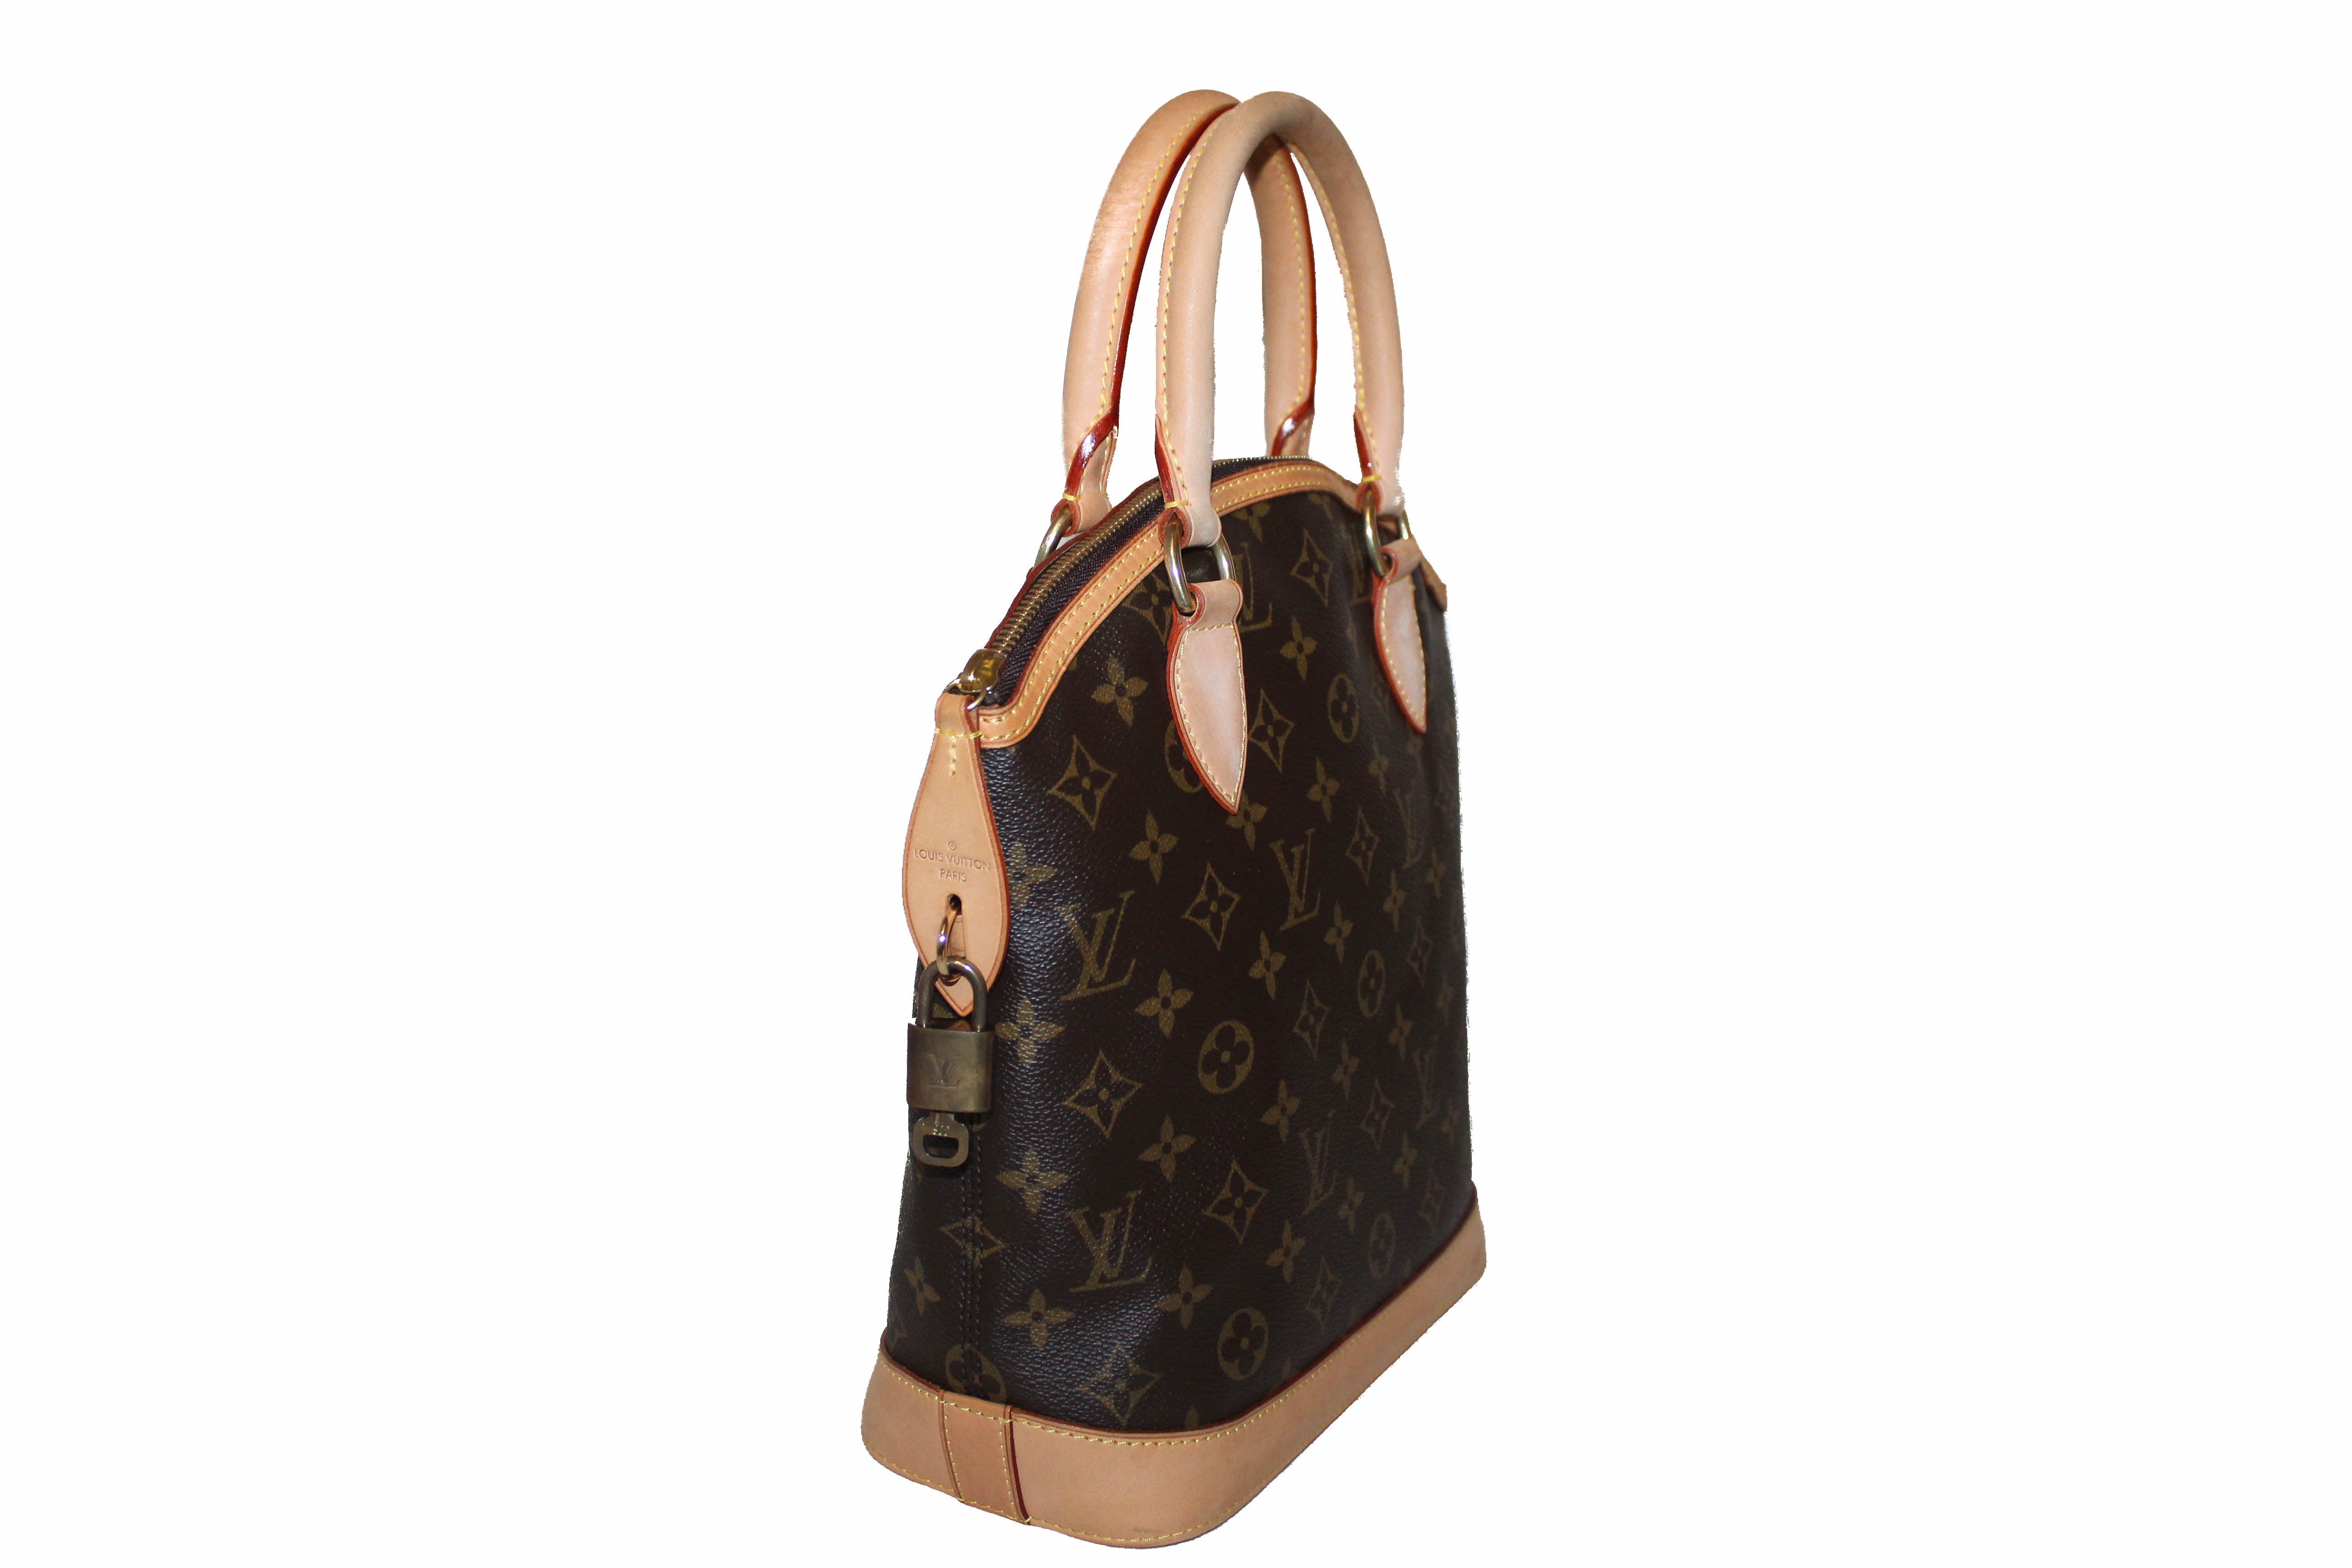 Auth Louis Vuitton Lockit Pm Hand Bag #2529L22